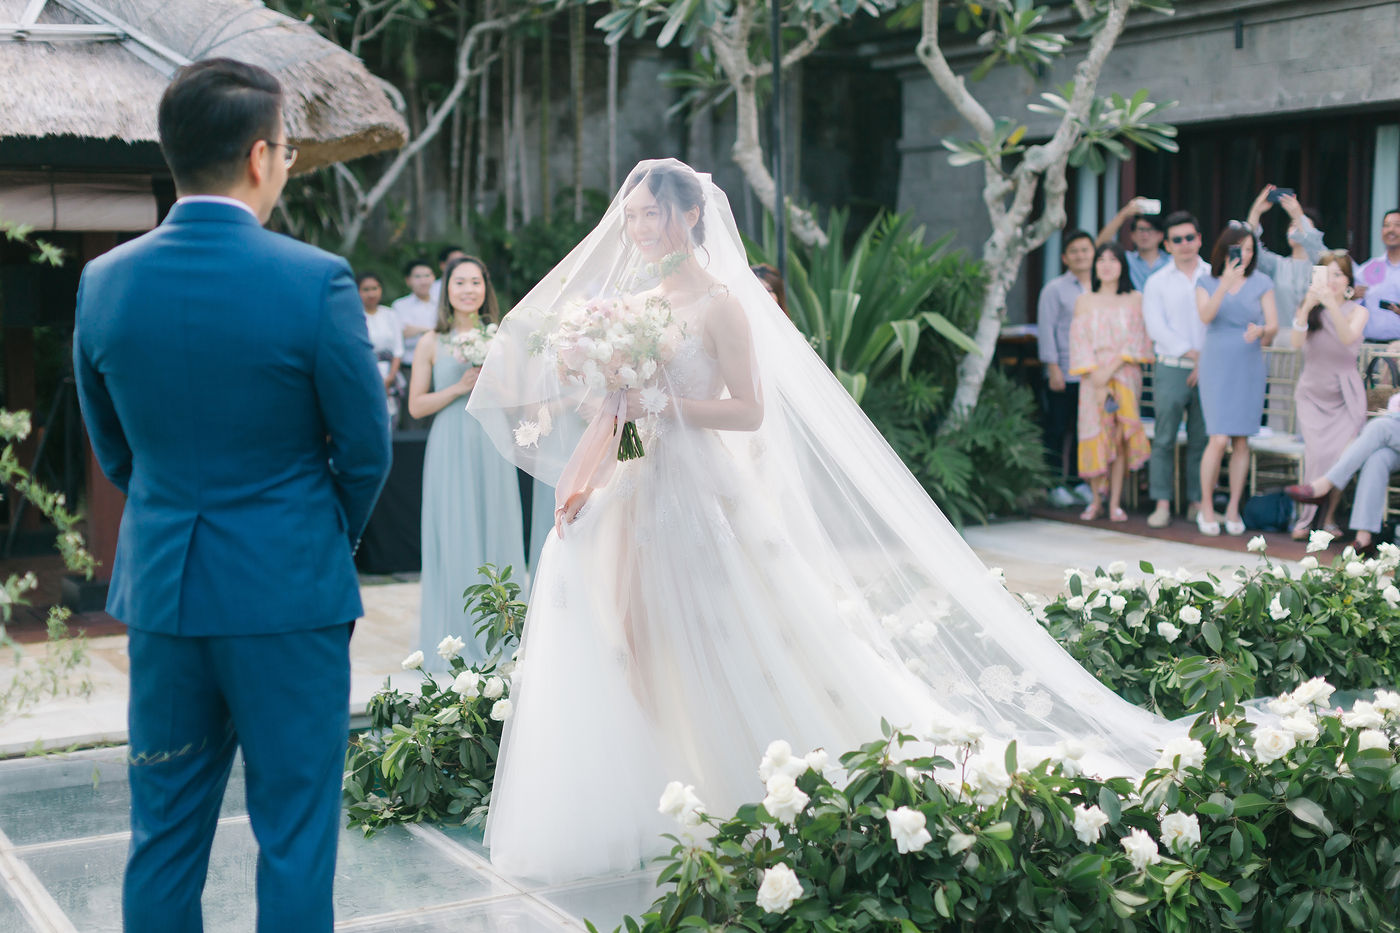 峇里島婚禮是相當熱門的海外婚禮地點